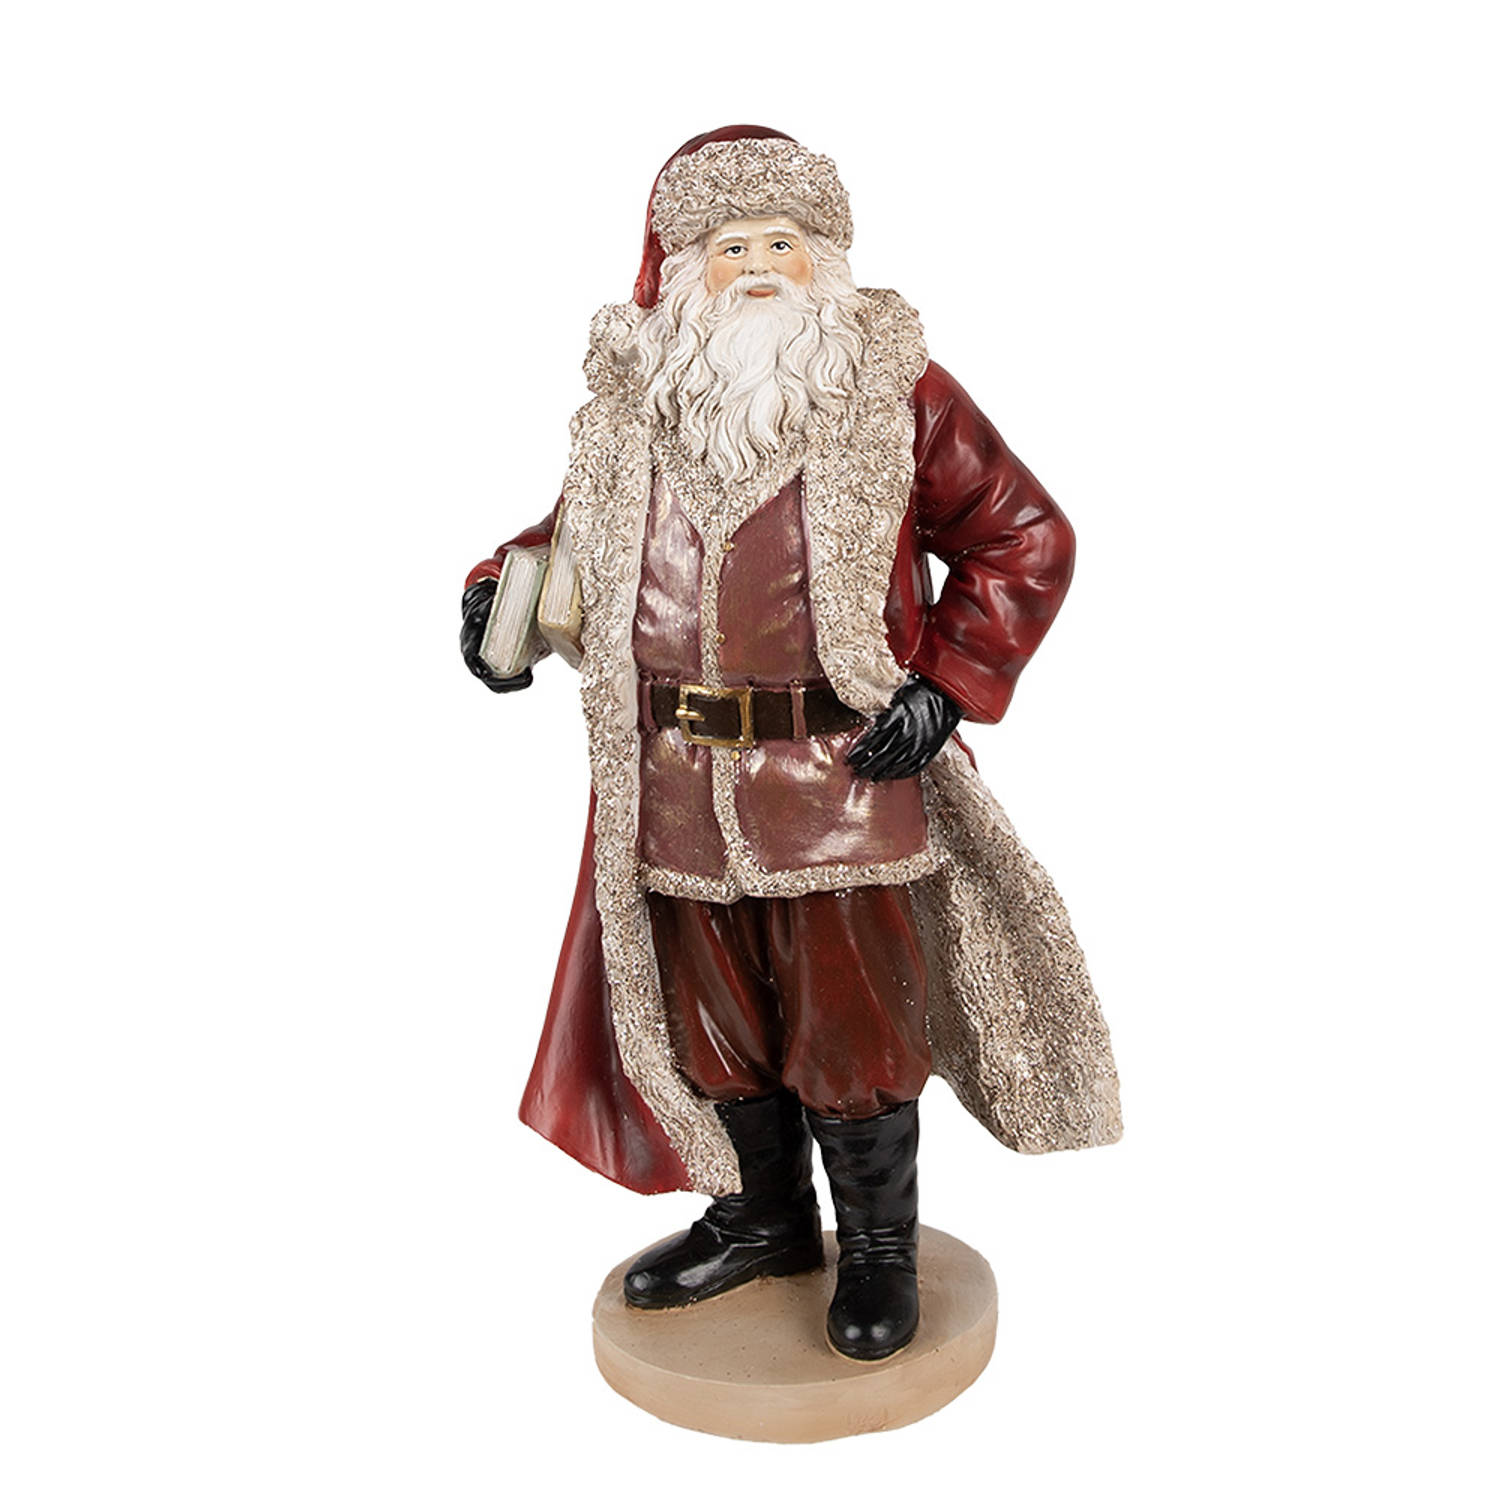 HAES DECO - Kerstman deco Figuur - Formaat 18x14x33 cm - Kleur Rood - Materiaal Polyresin - Kerst Figuur, Kerstdecoratie